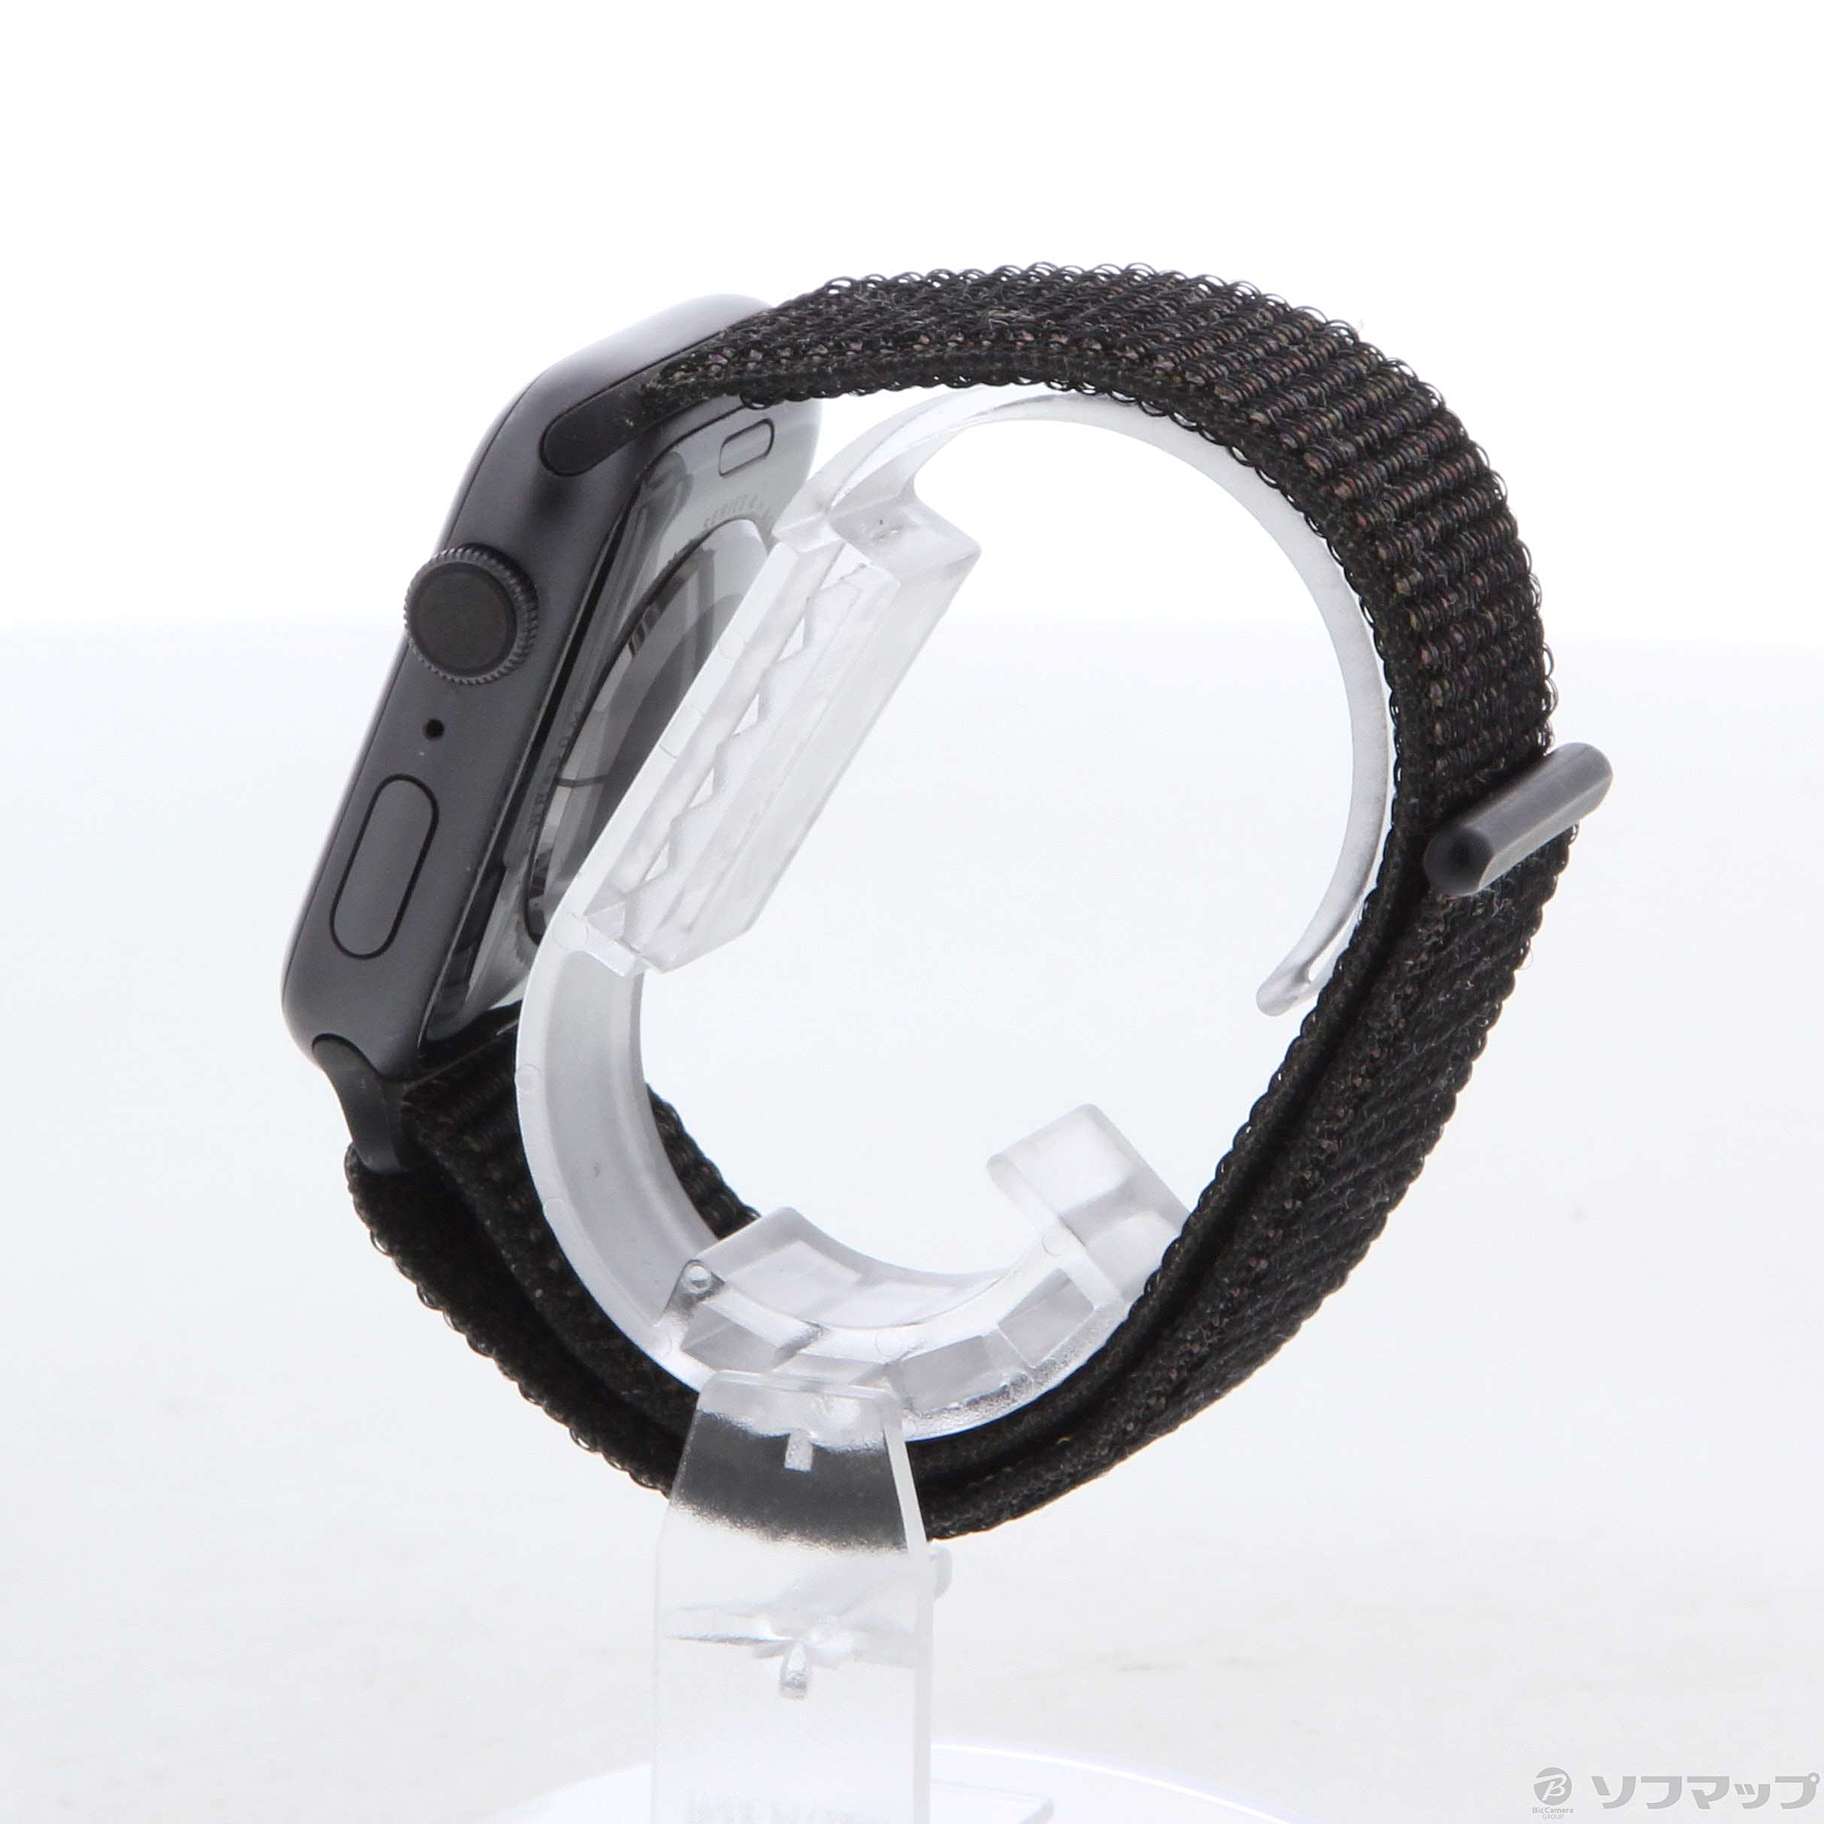 中古】Apple Watch Series 4 GPS 44mm スペースグレイアルミニウム